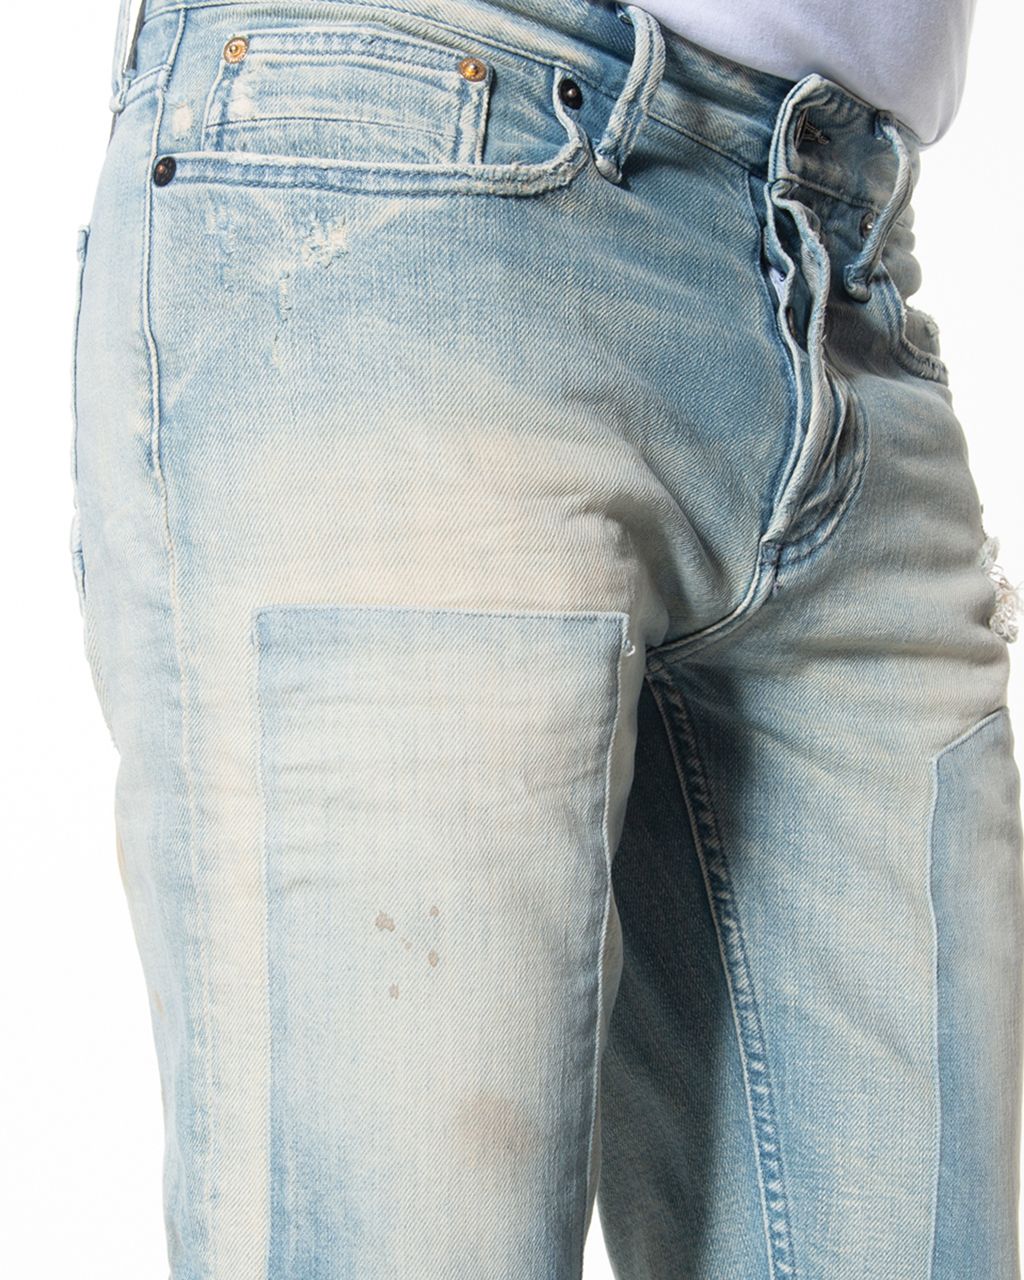 DENHAM Razor BLHID Jeans Blauw 061712-001-30/32